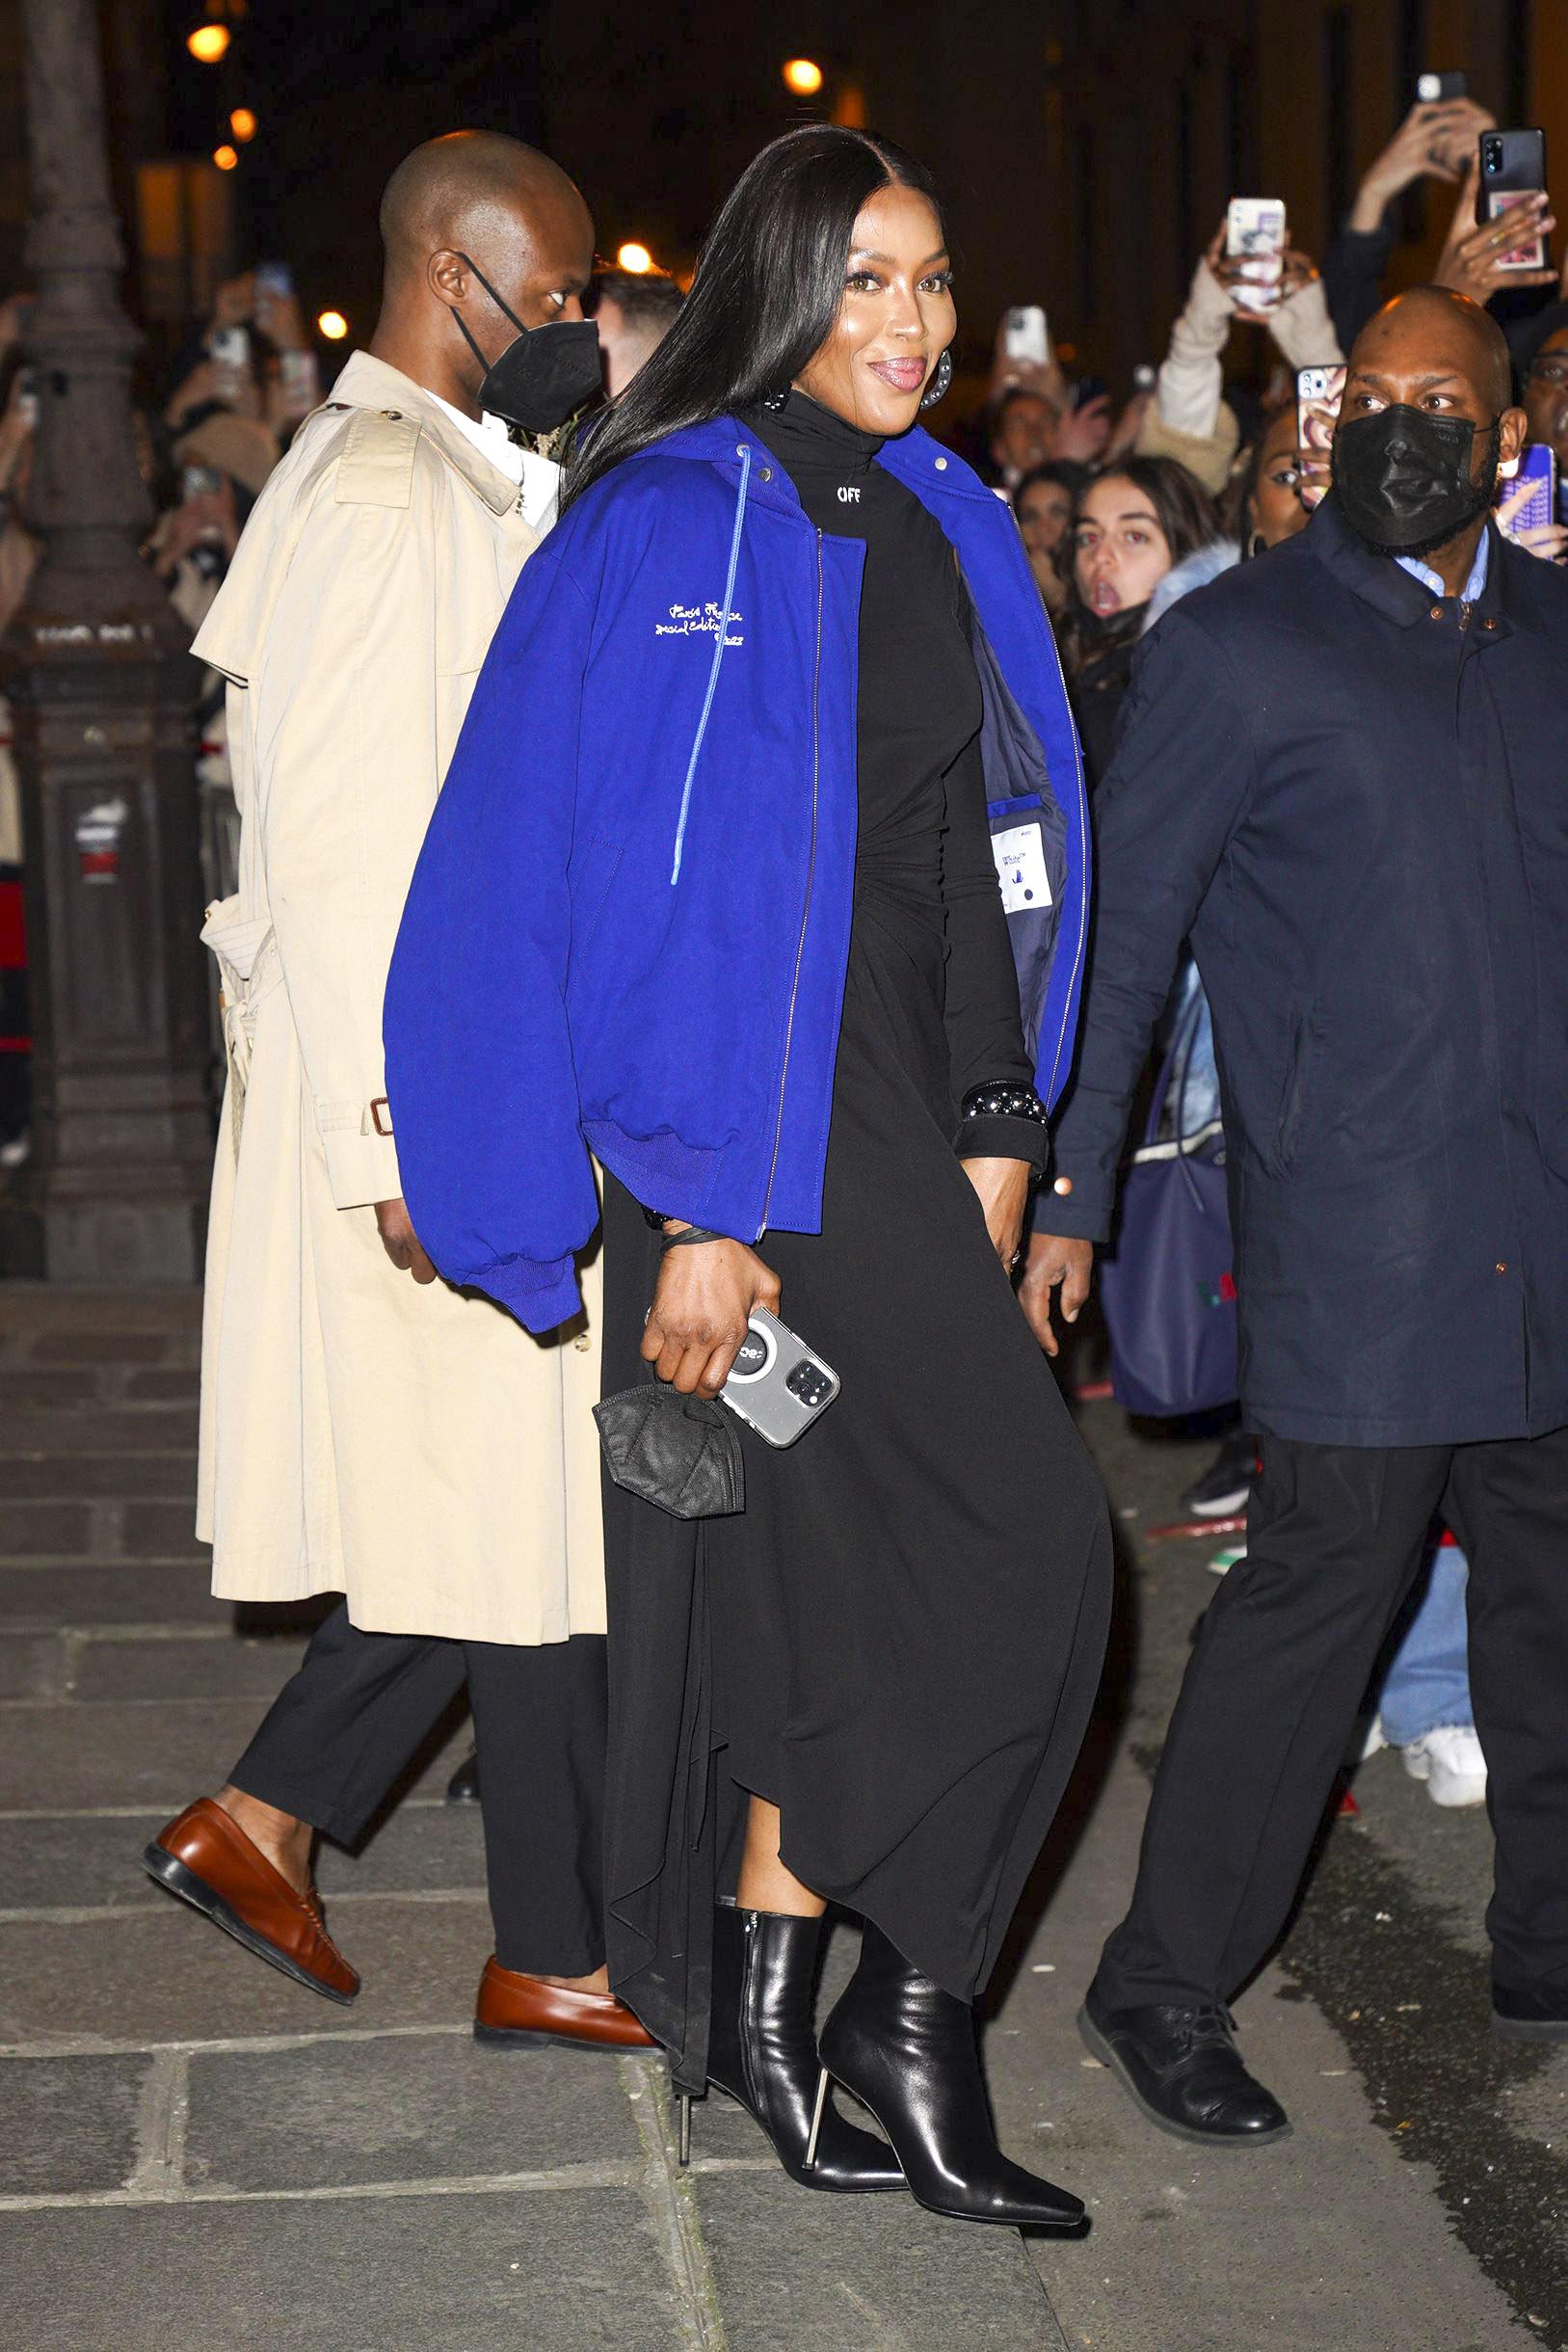 Naomi Campbell viajó a Francia para asistir a la Semana de la Moda en París. Para ello, lució un vestido negro que combinó con sus botas de cuero. Además, llevó una campera oversize azul sobre sus hombros